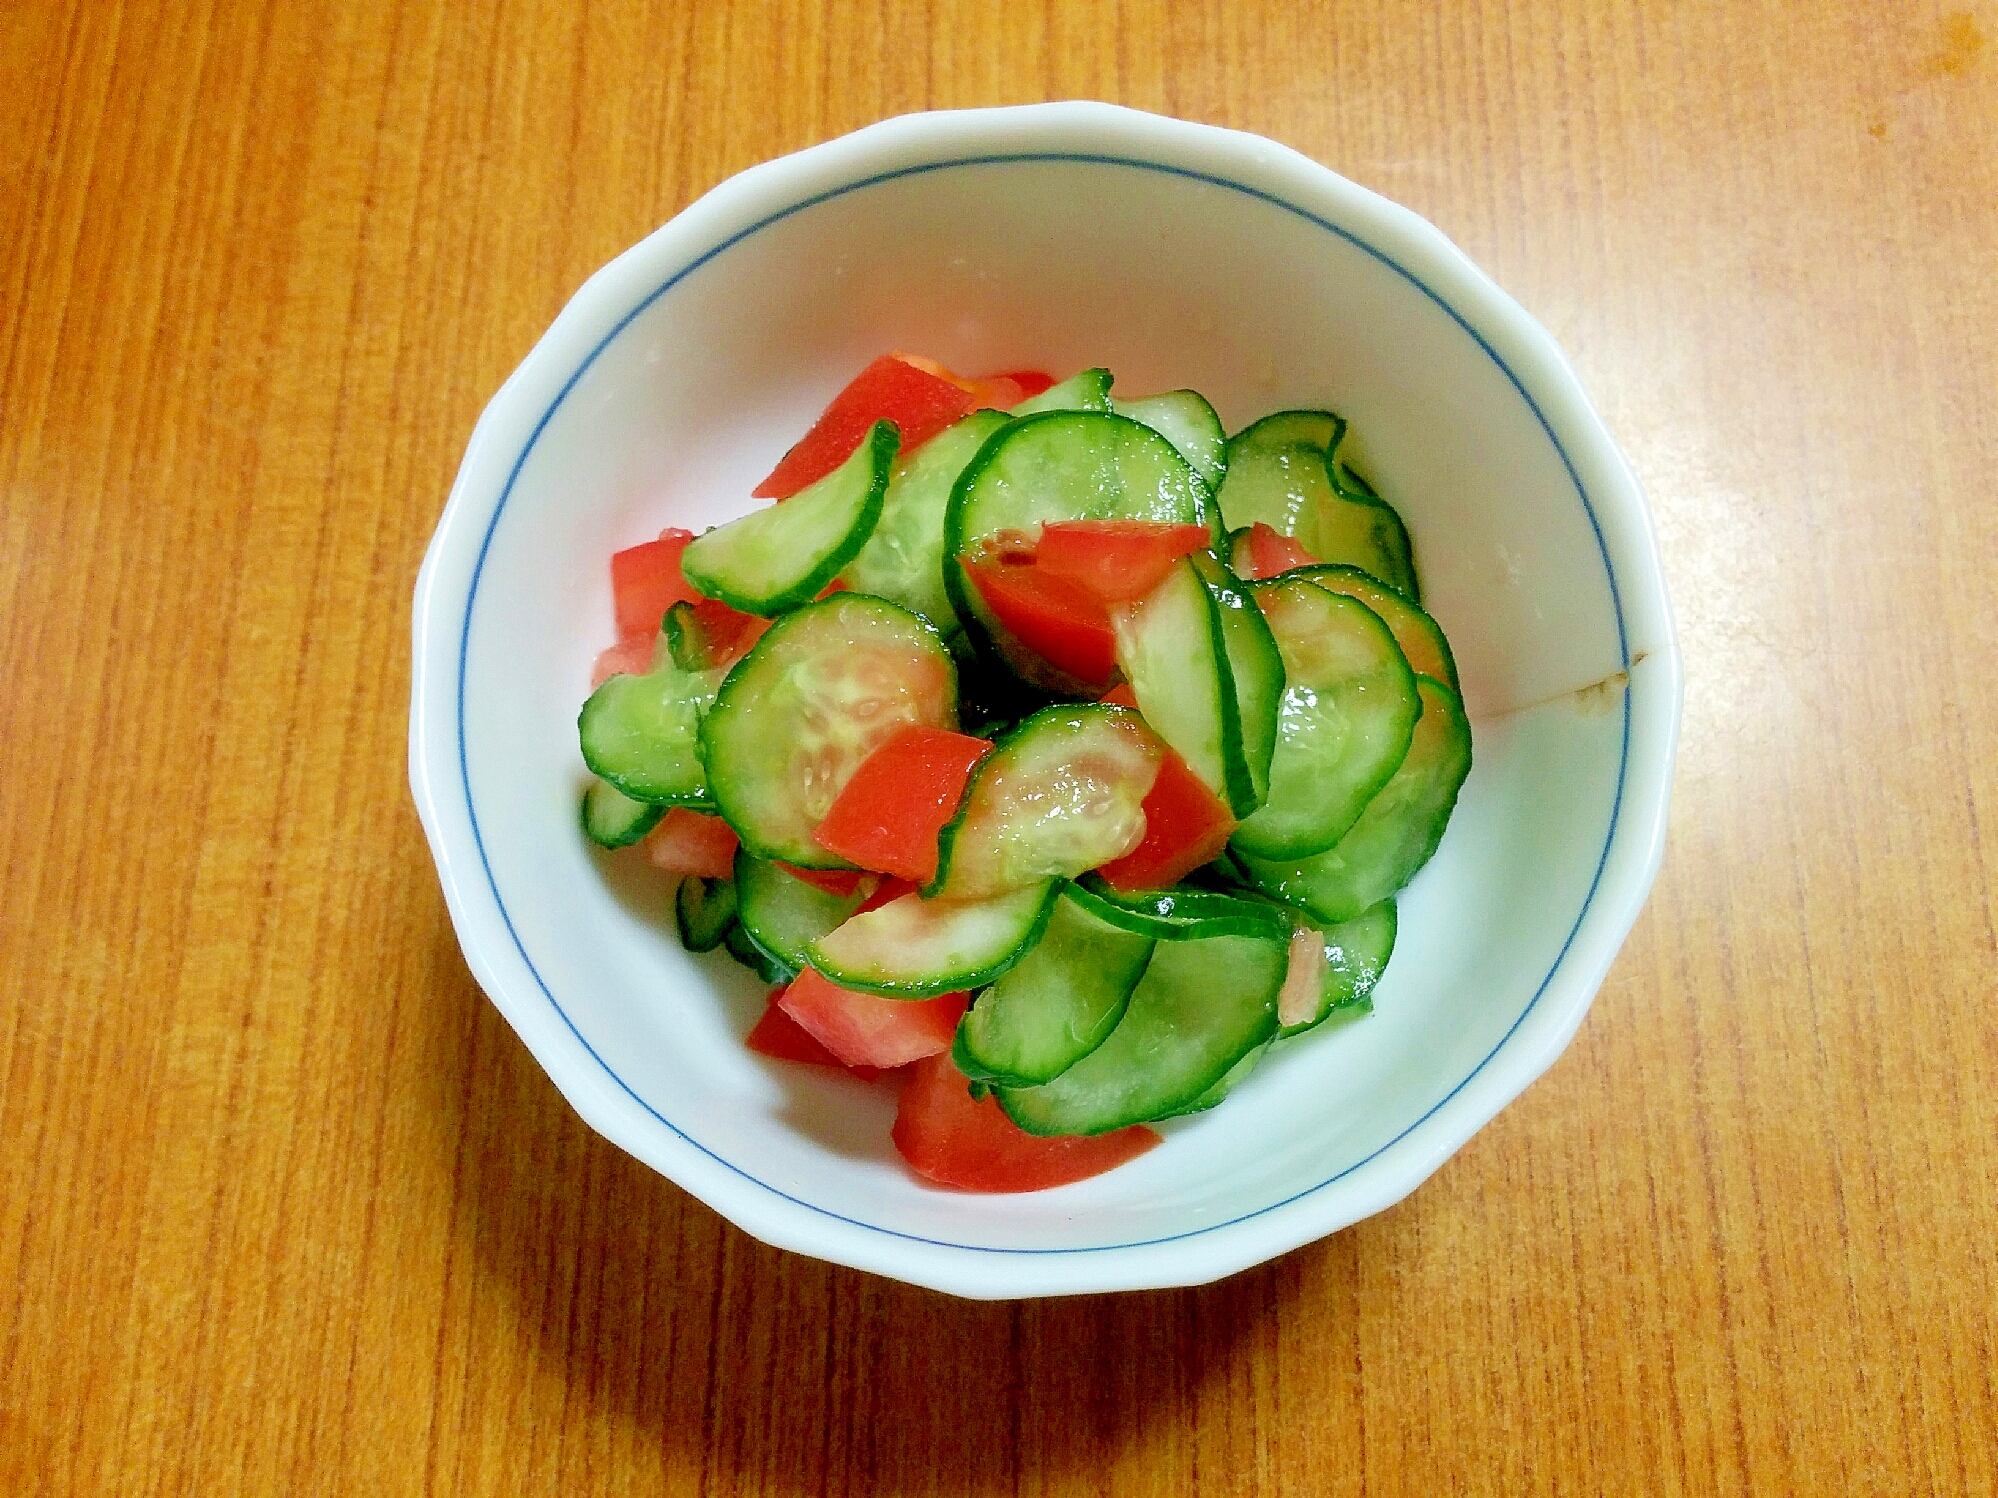 きゅうりとトマトのサラダ